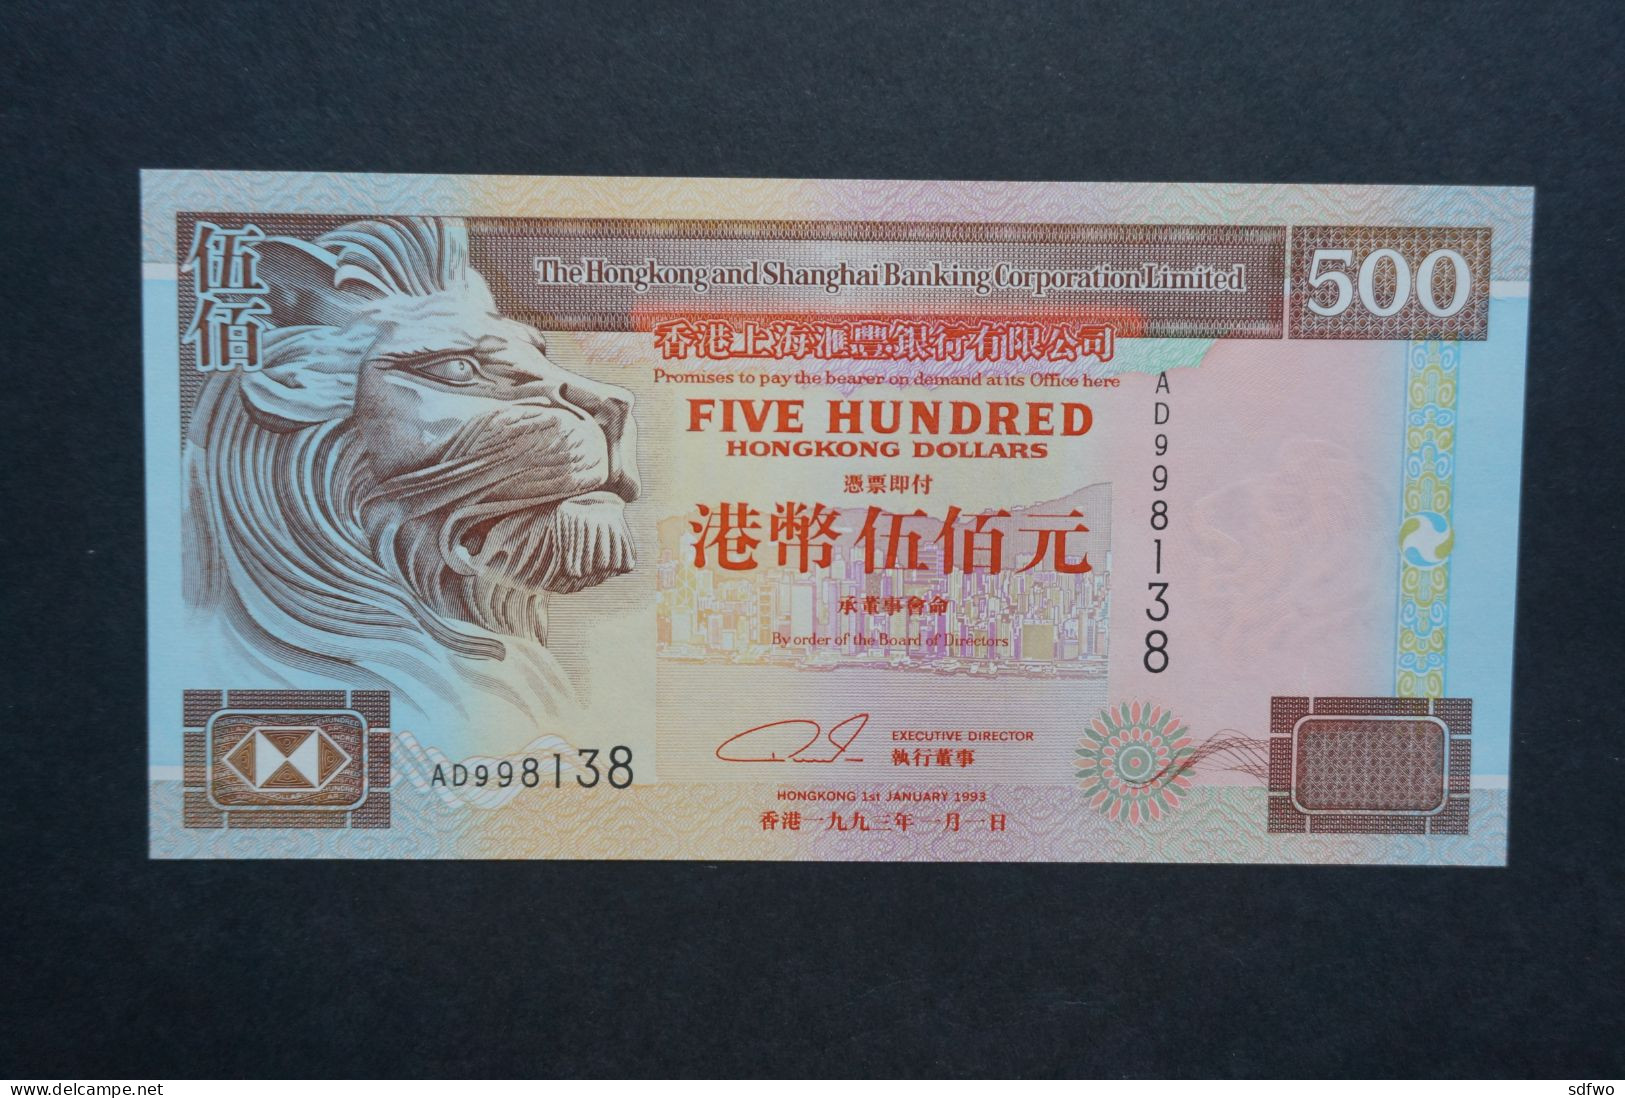 (Tv) 1993 HONG KONG OLD ISSUE - HSBC 500 DOLLARS - #AD998,138 (UNC) - Hongkong